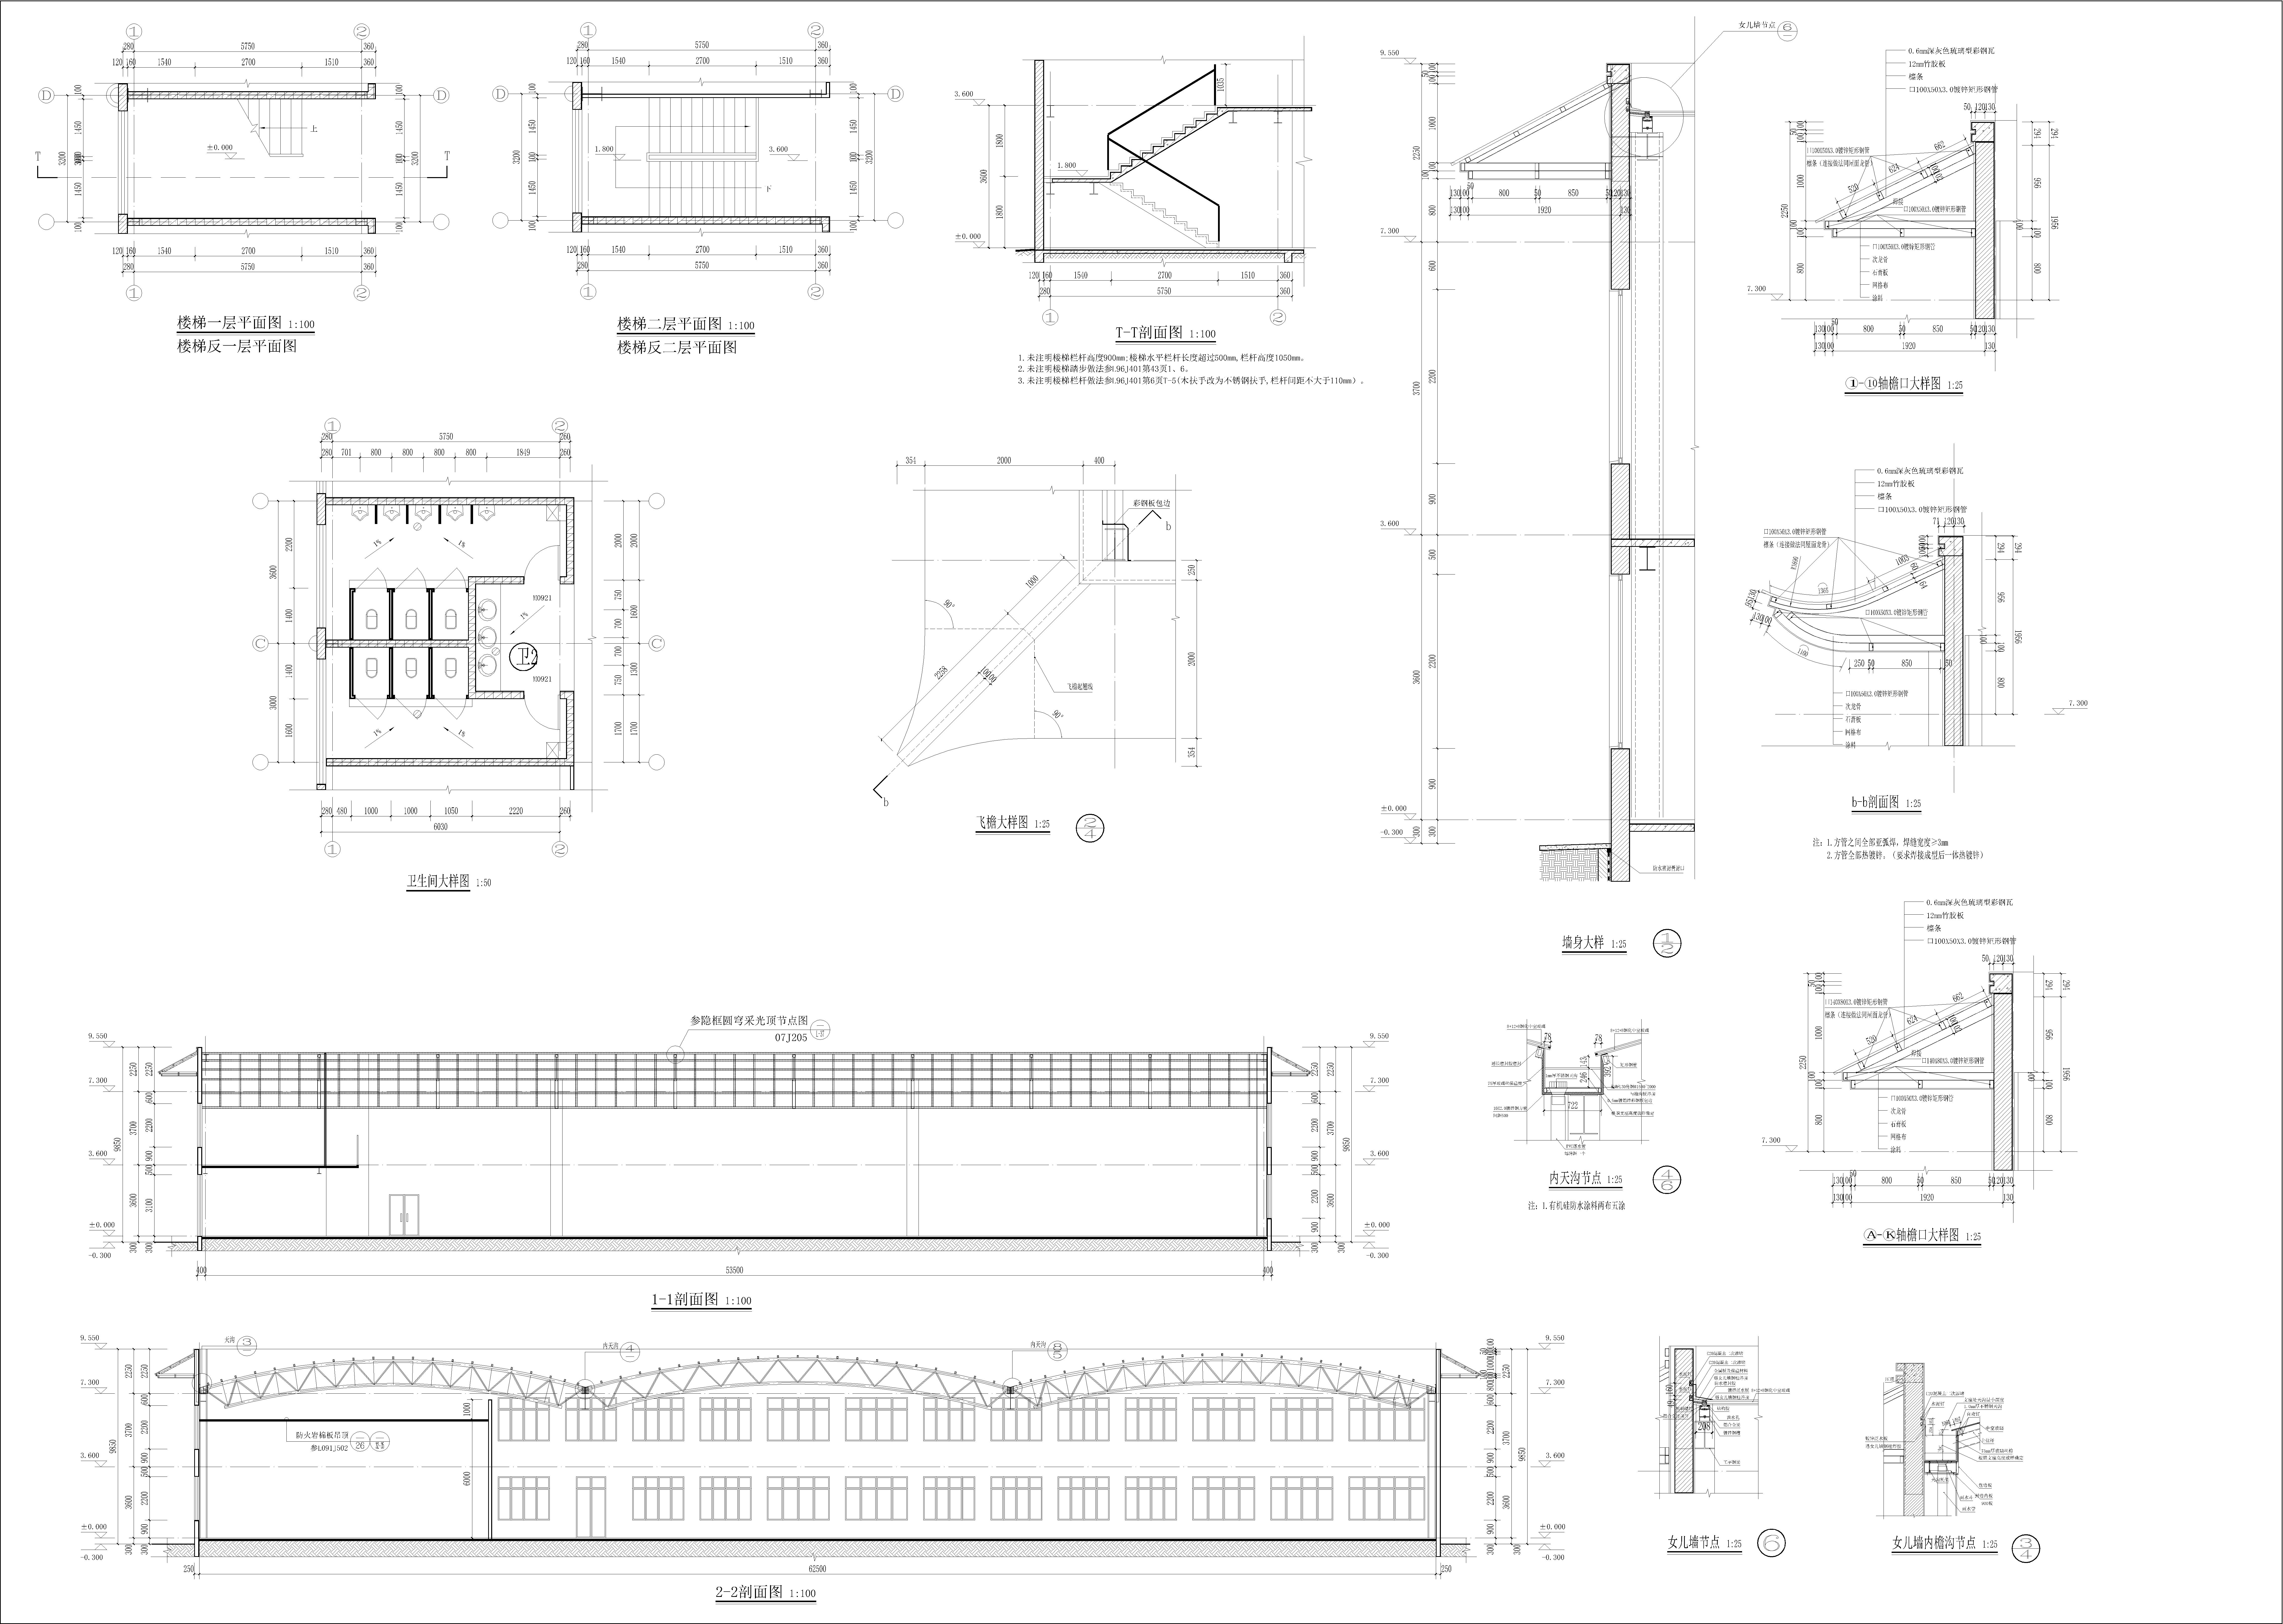 岭西庄园2层生态庄园（花卉种植）建筑设计施工图